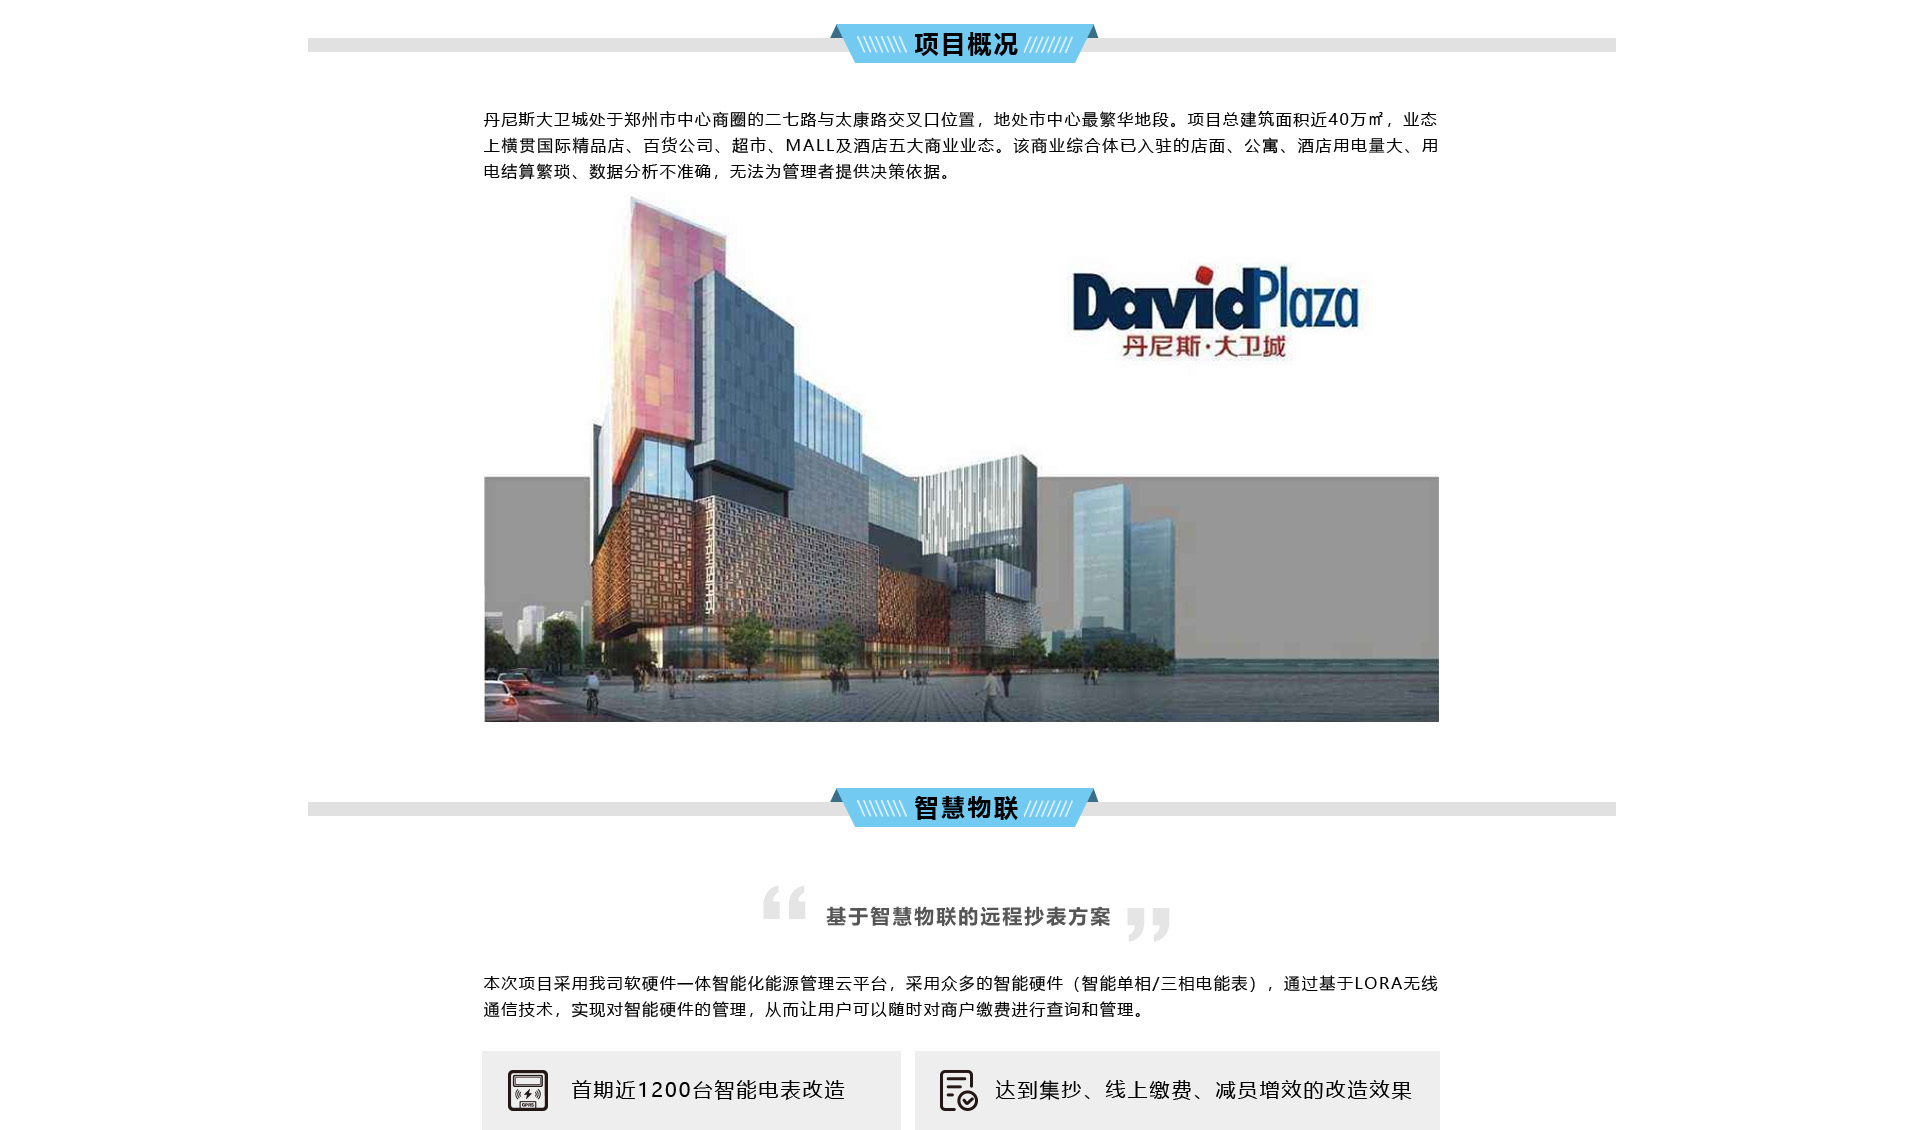 郑州丹尼斯·大卫城智能仪表升级改造落地